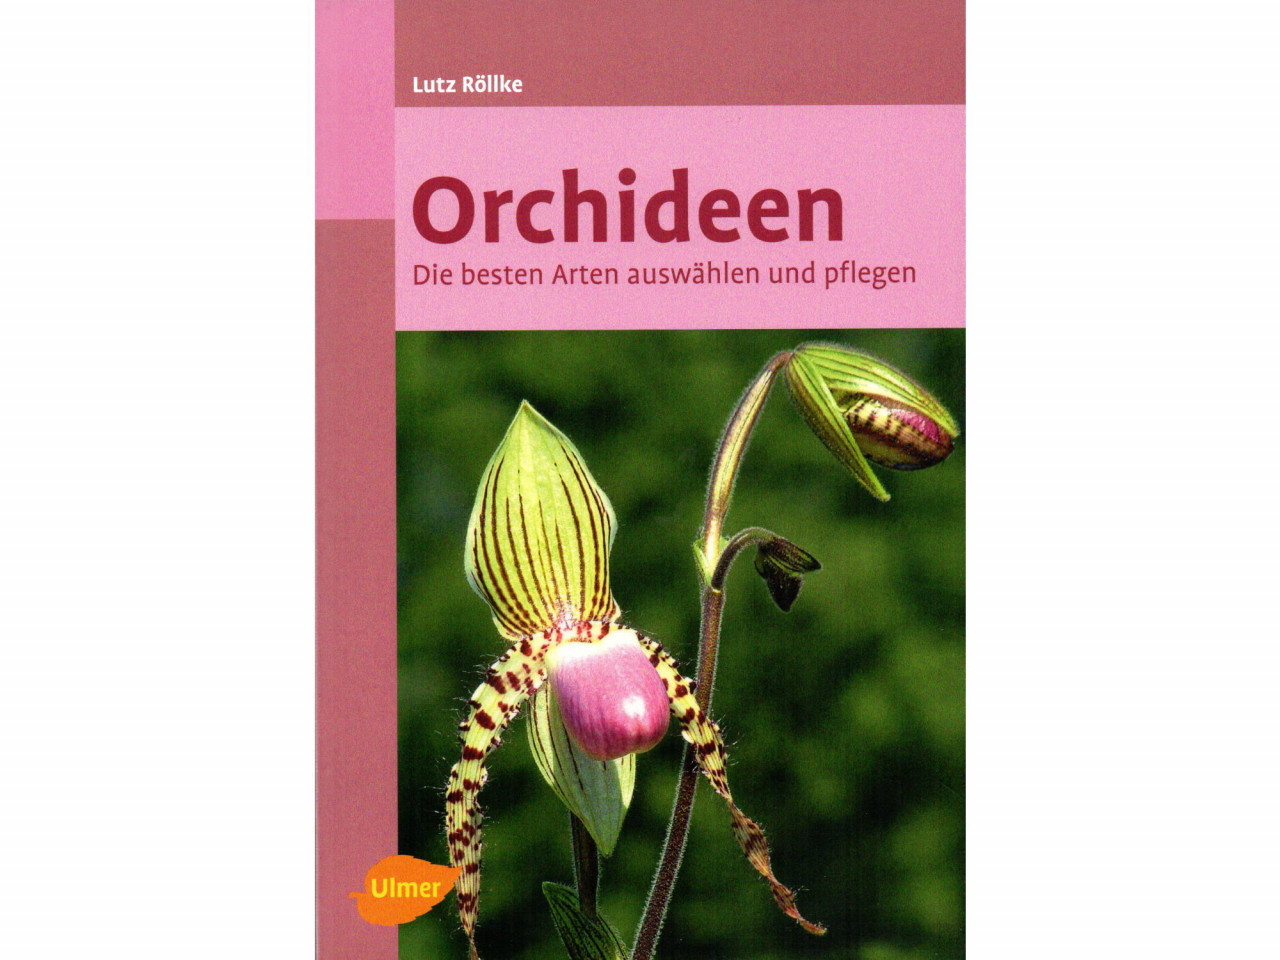 ULMER - Orchideen